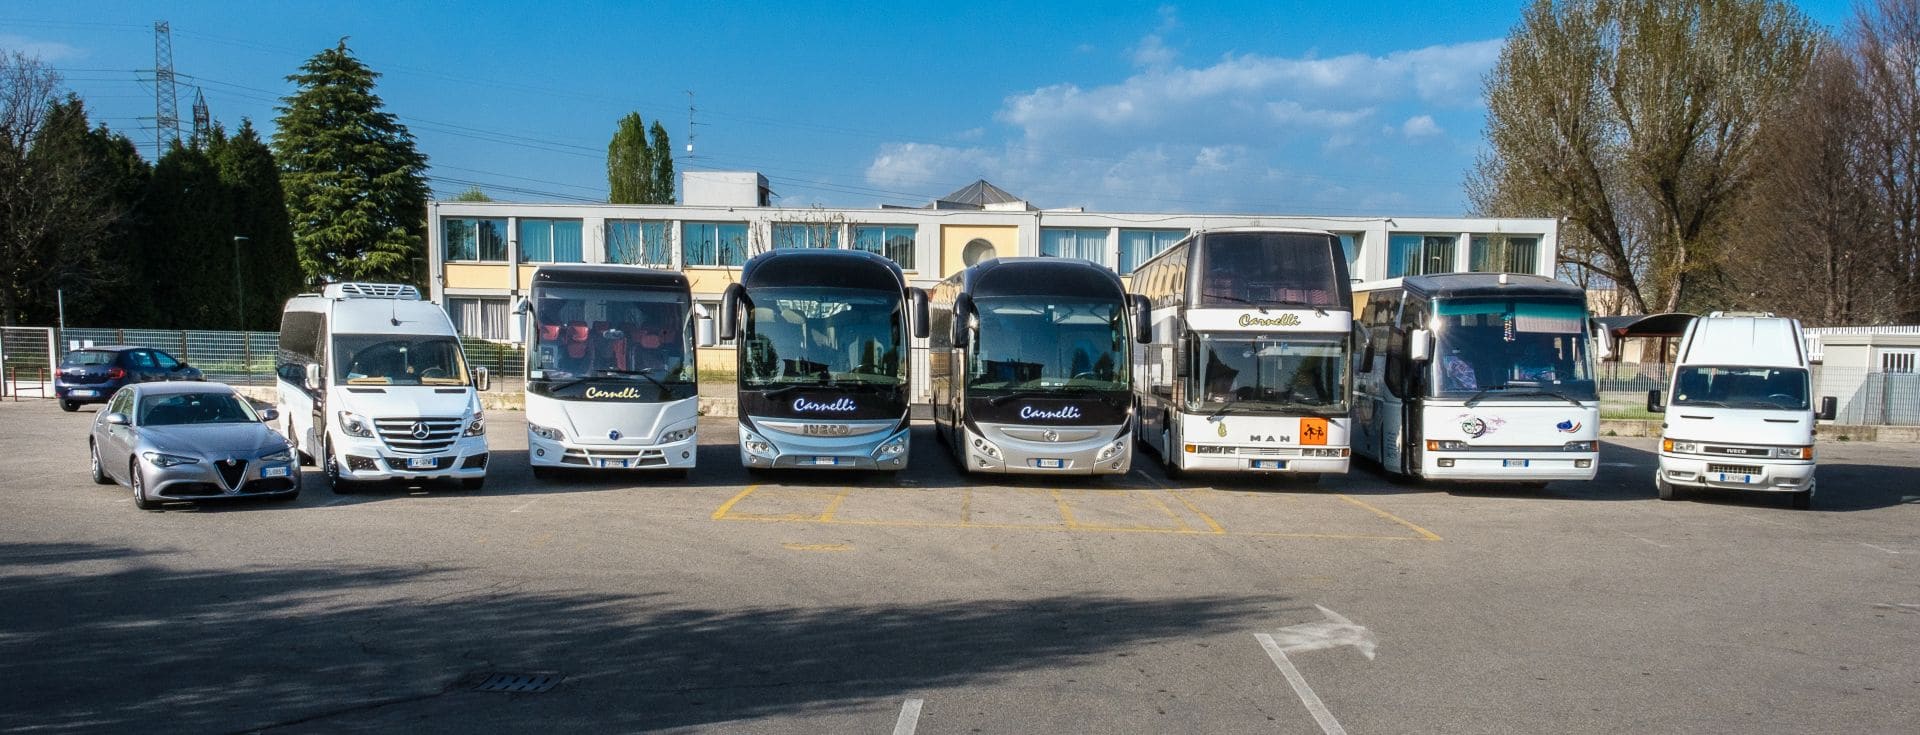 Prezzi e Tariffe Noleggio pullman, bus, minibus Milano